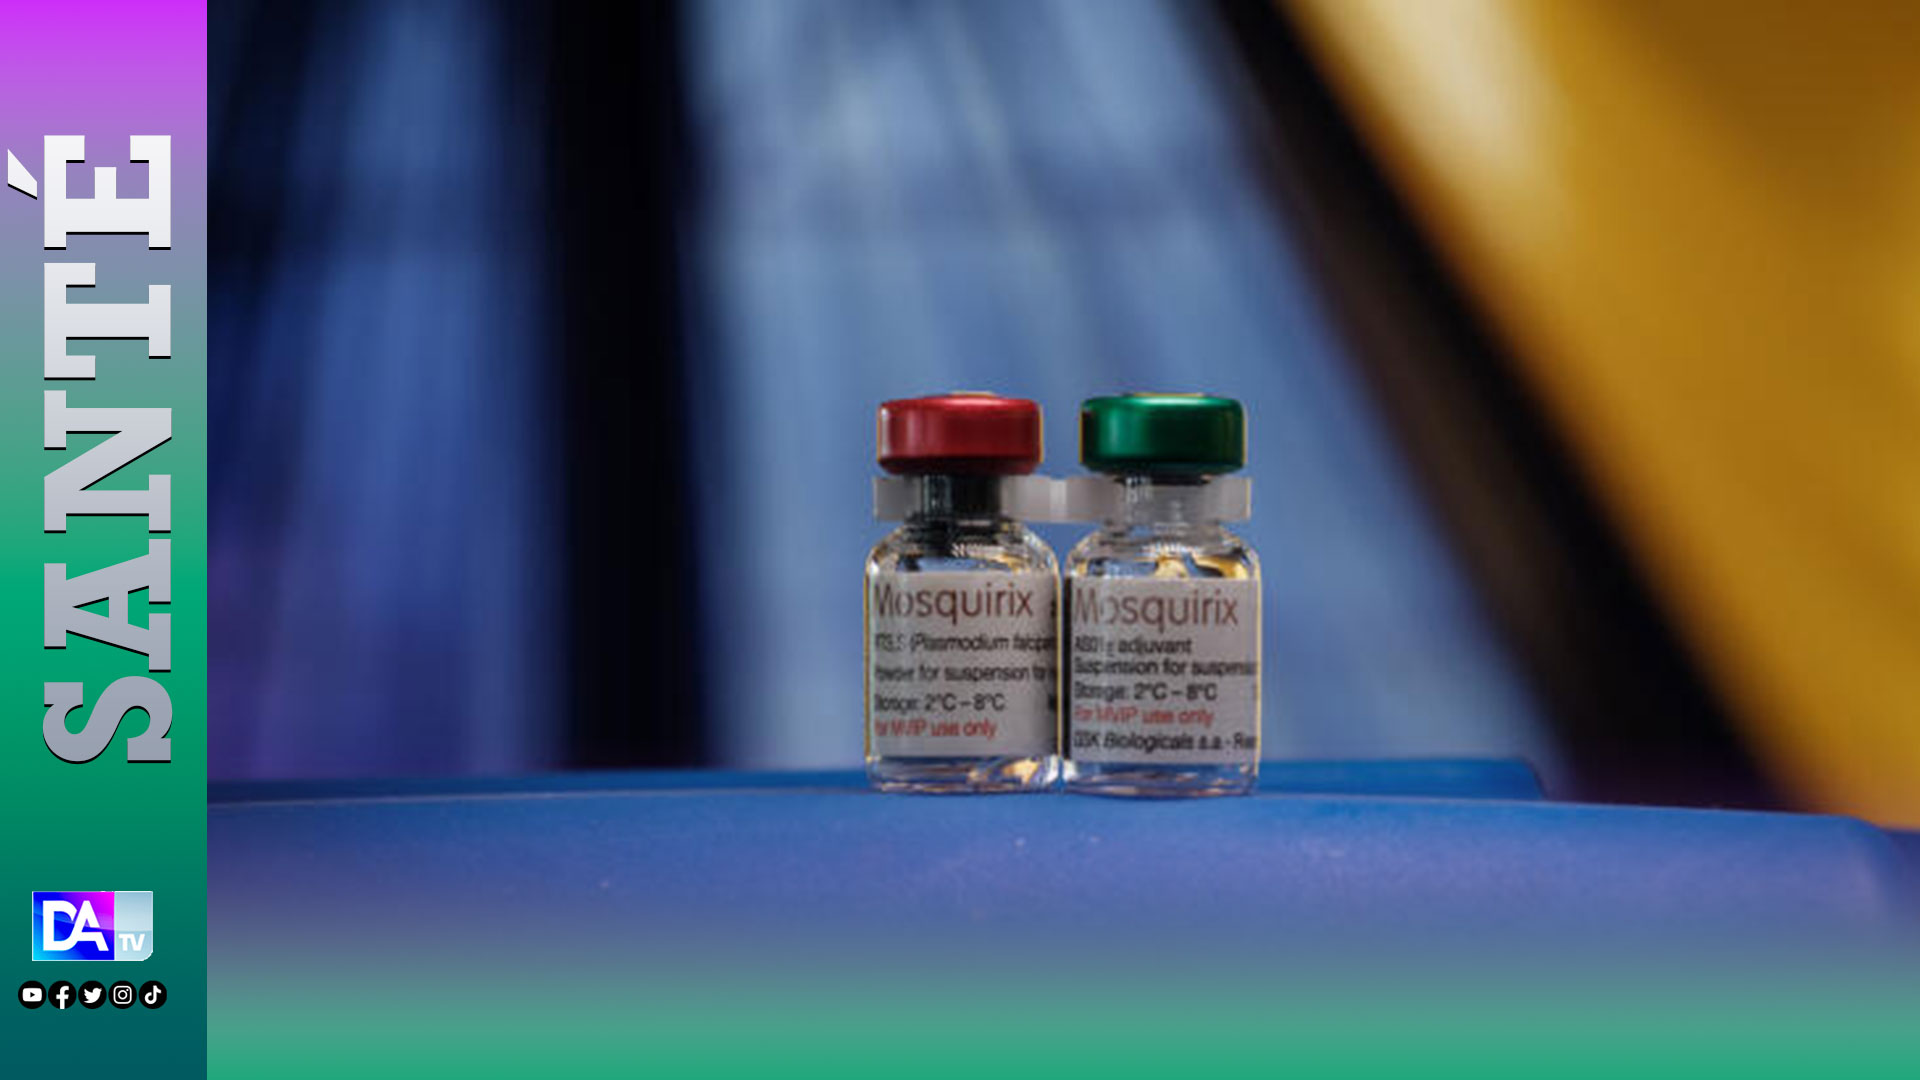 Afrique / Deux vaccins pour lutter contre le Paludisme : l’OMS et l’Alliance mondiale du vaccin (GAVI) prévoient des demandes allant jusqu’à 100 millions de doses